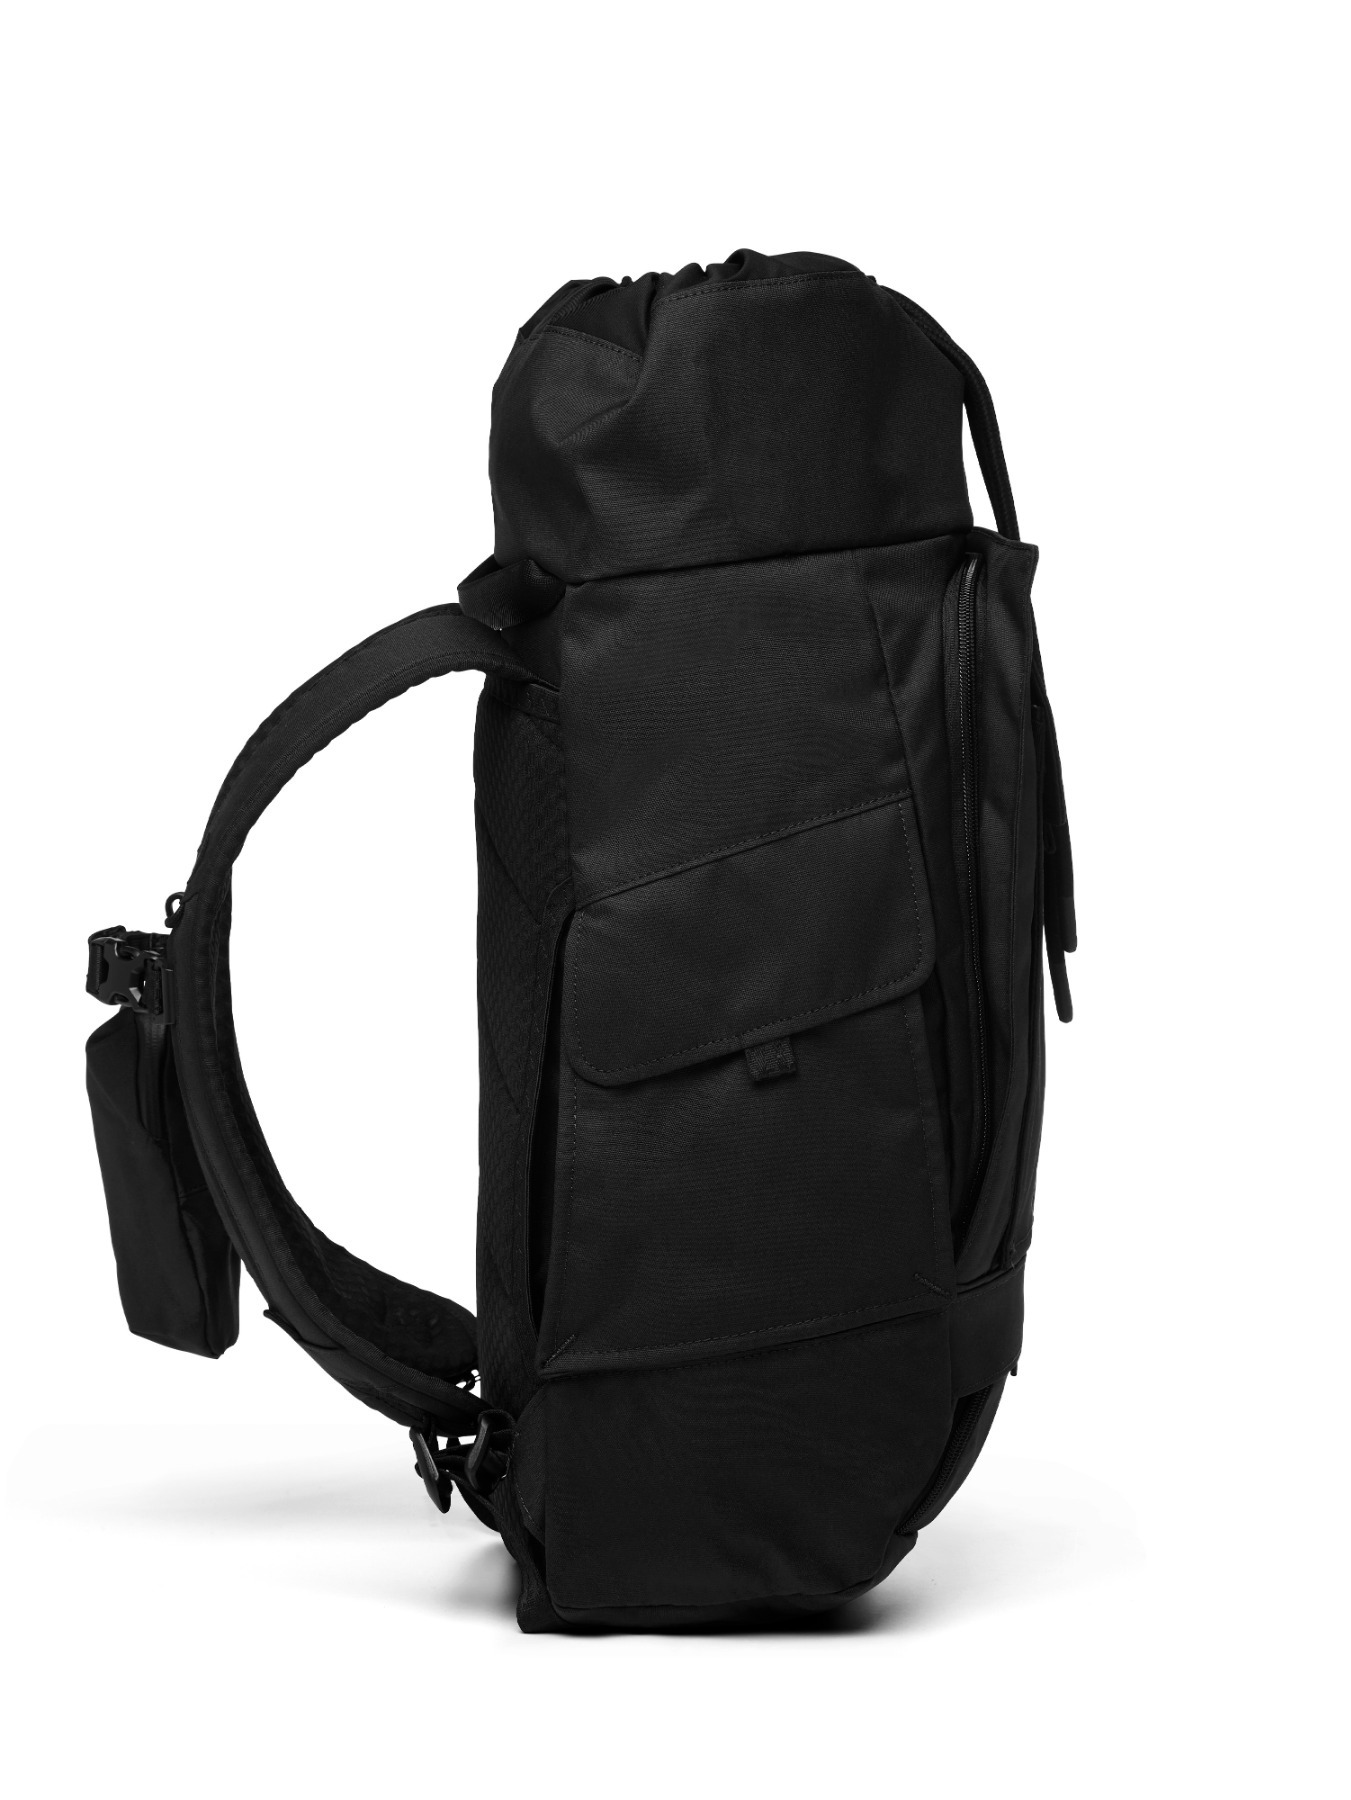 pinqponq Backpack BLOK medium - Construct Black 4